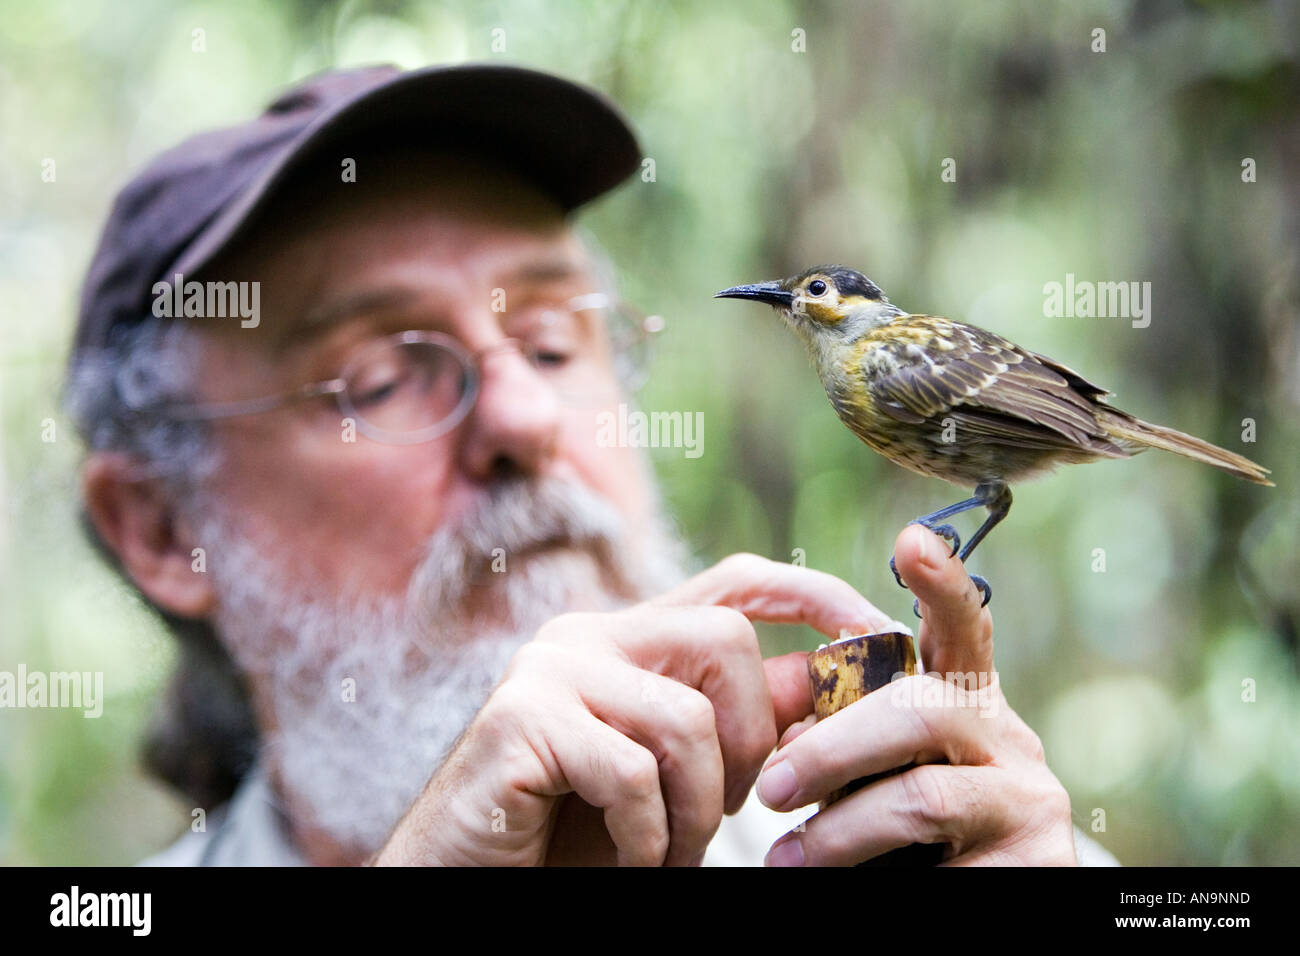 Daintree Naturalist David Armbrust feeds Macleay s Honeyeater bird Queensland Australia Stock Photo